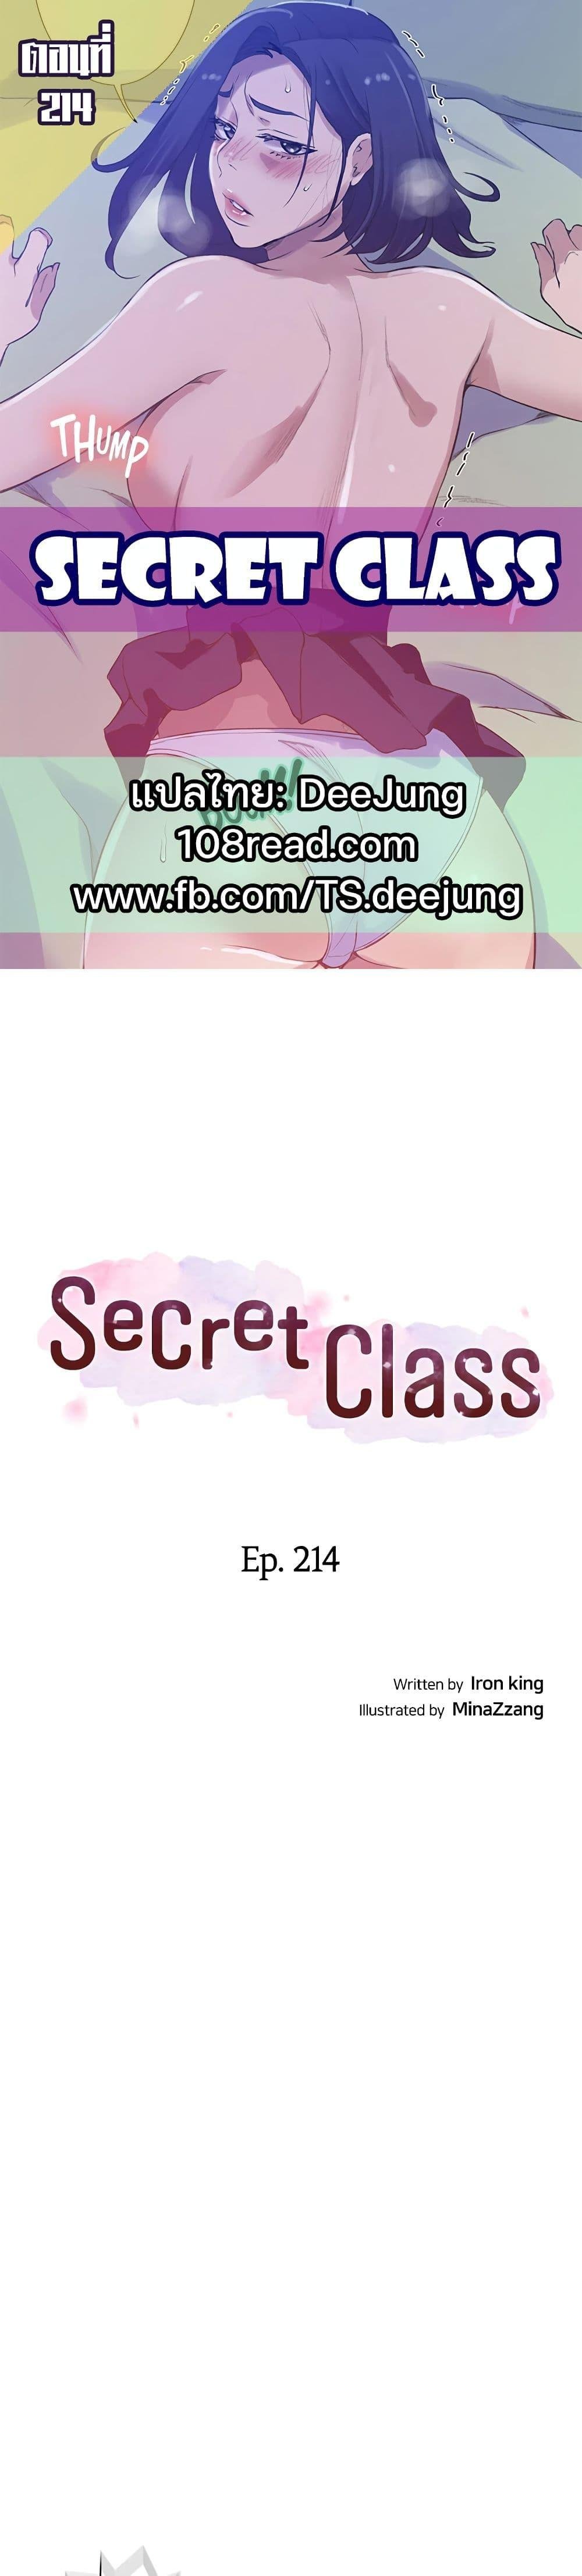 Secret Class 214 01